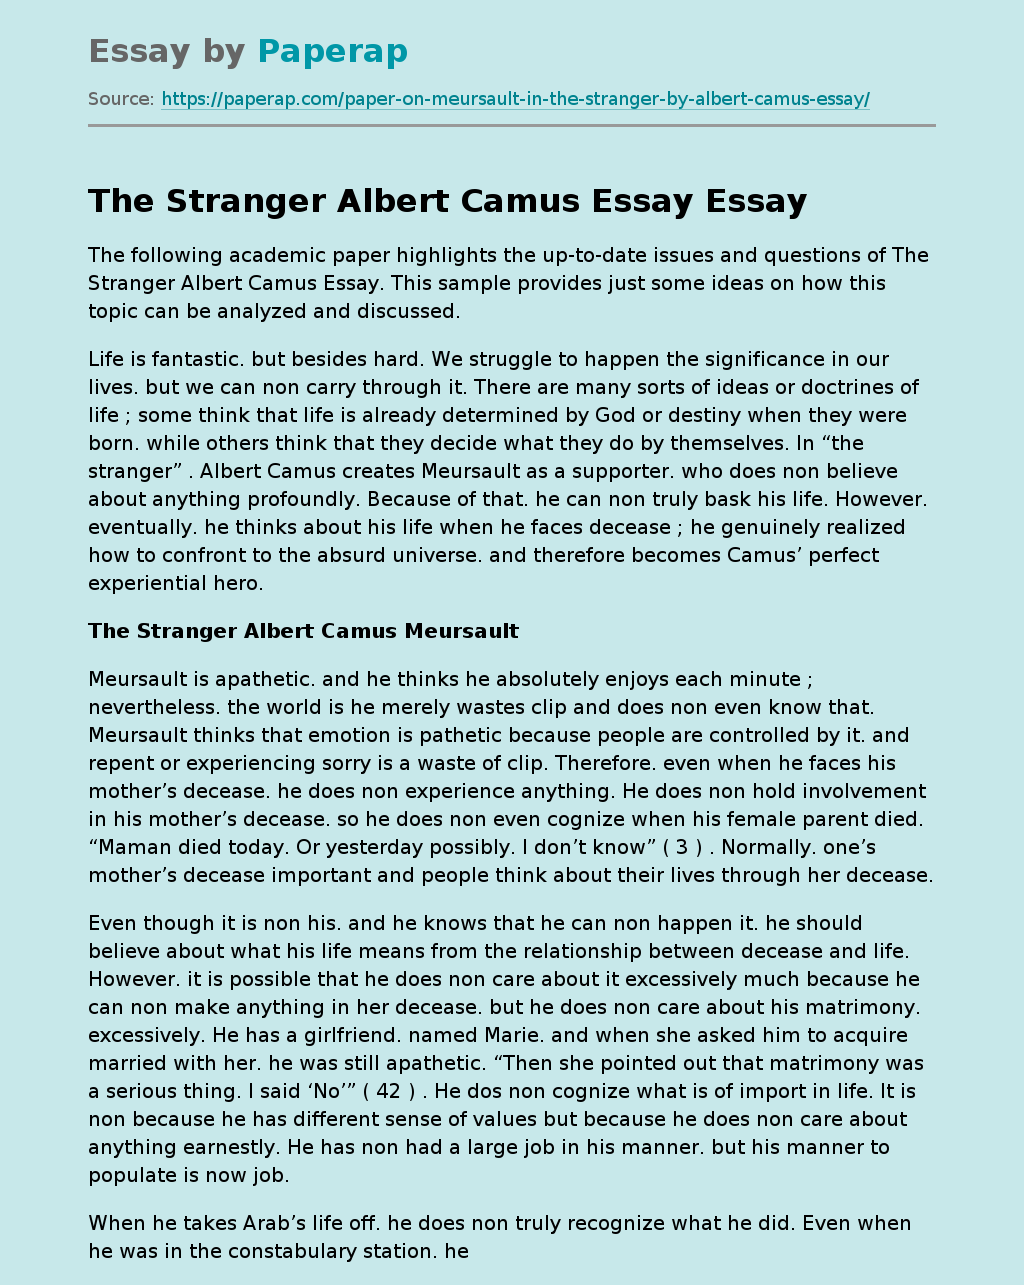 the sun in the stranger essay